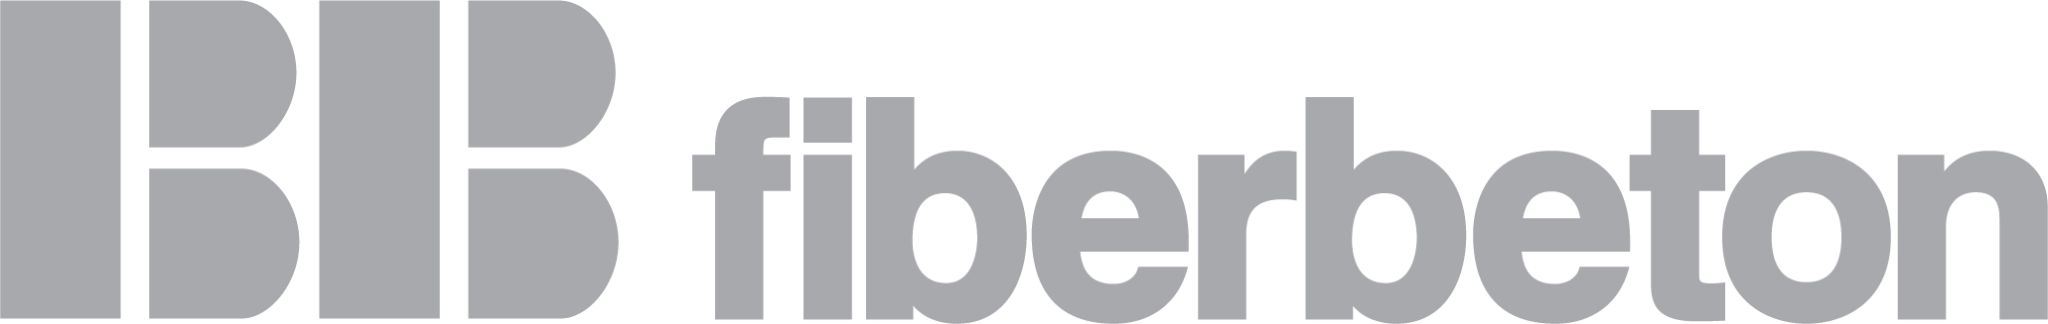 BB-fiberbeton-logo.png